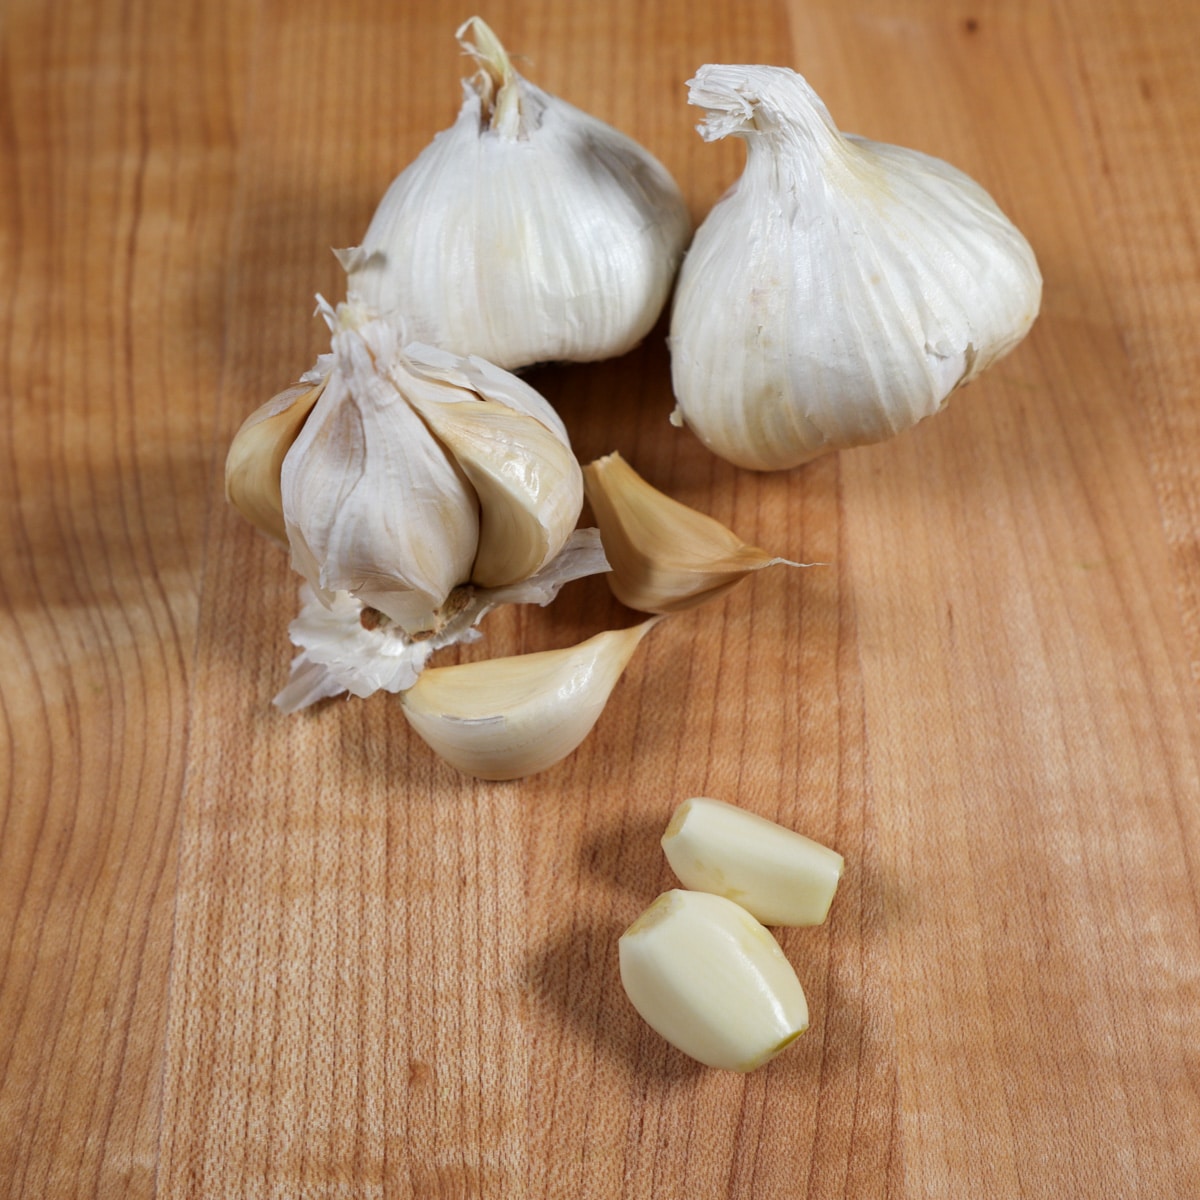 Garlic on a cutting board, cloves whole garlic